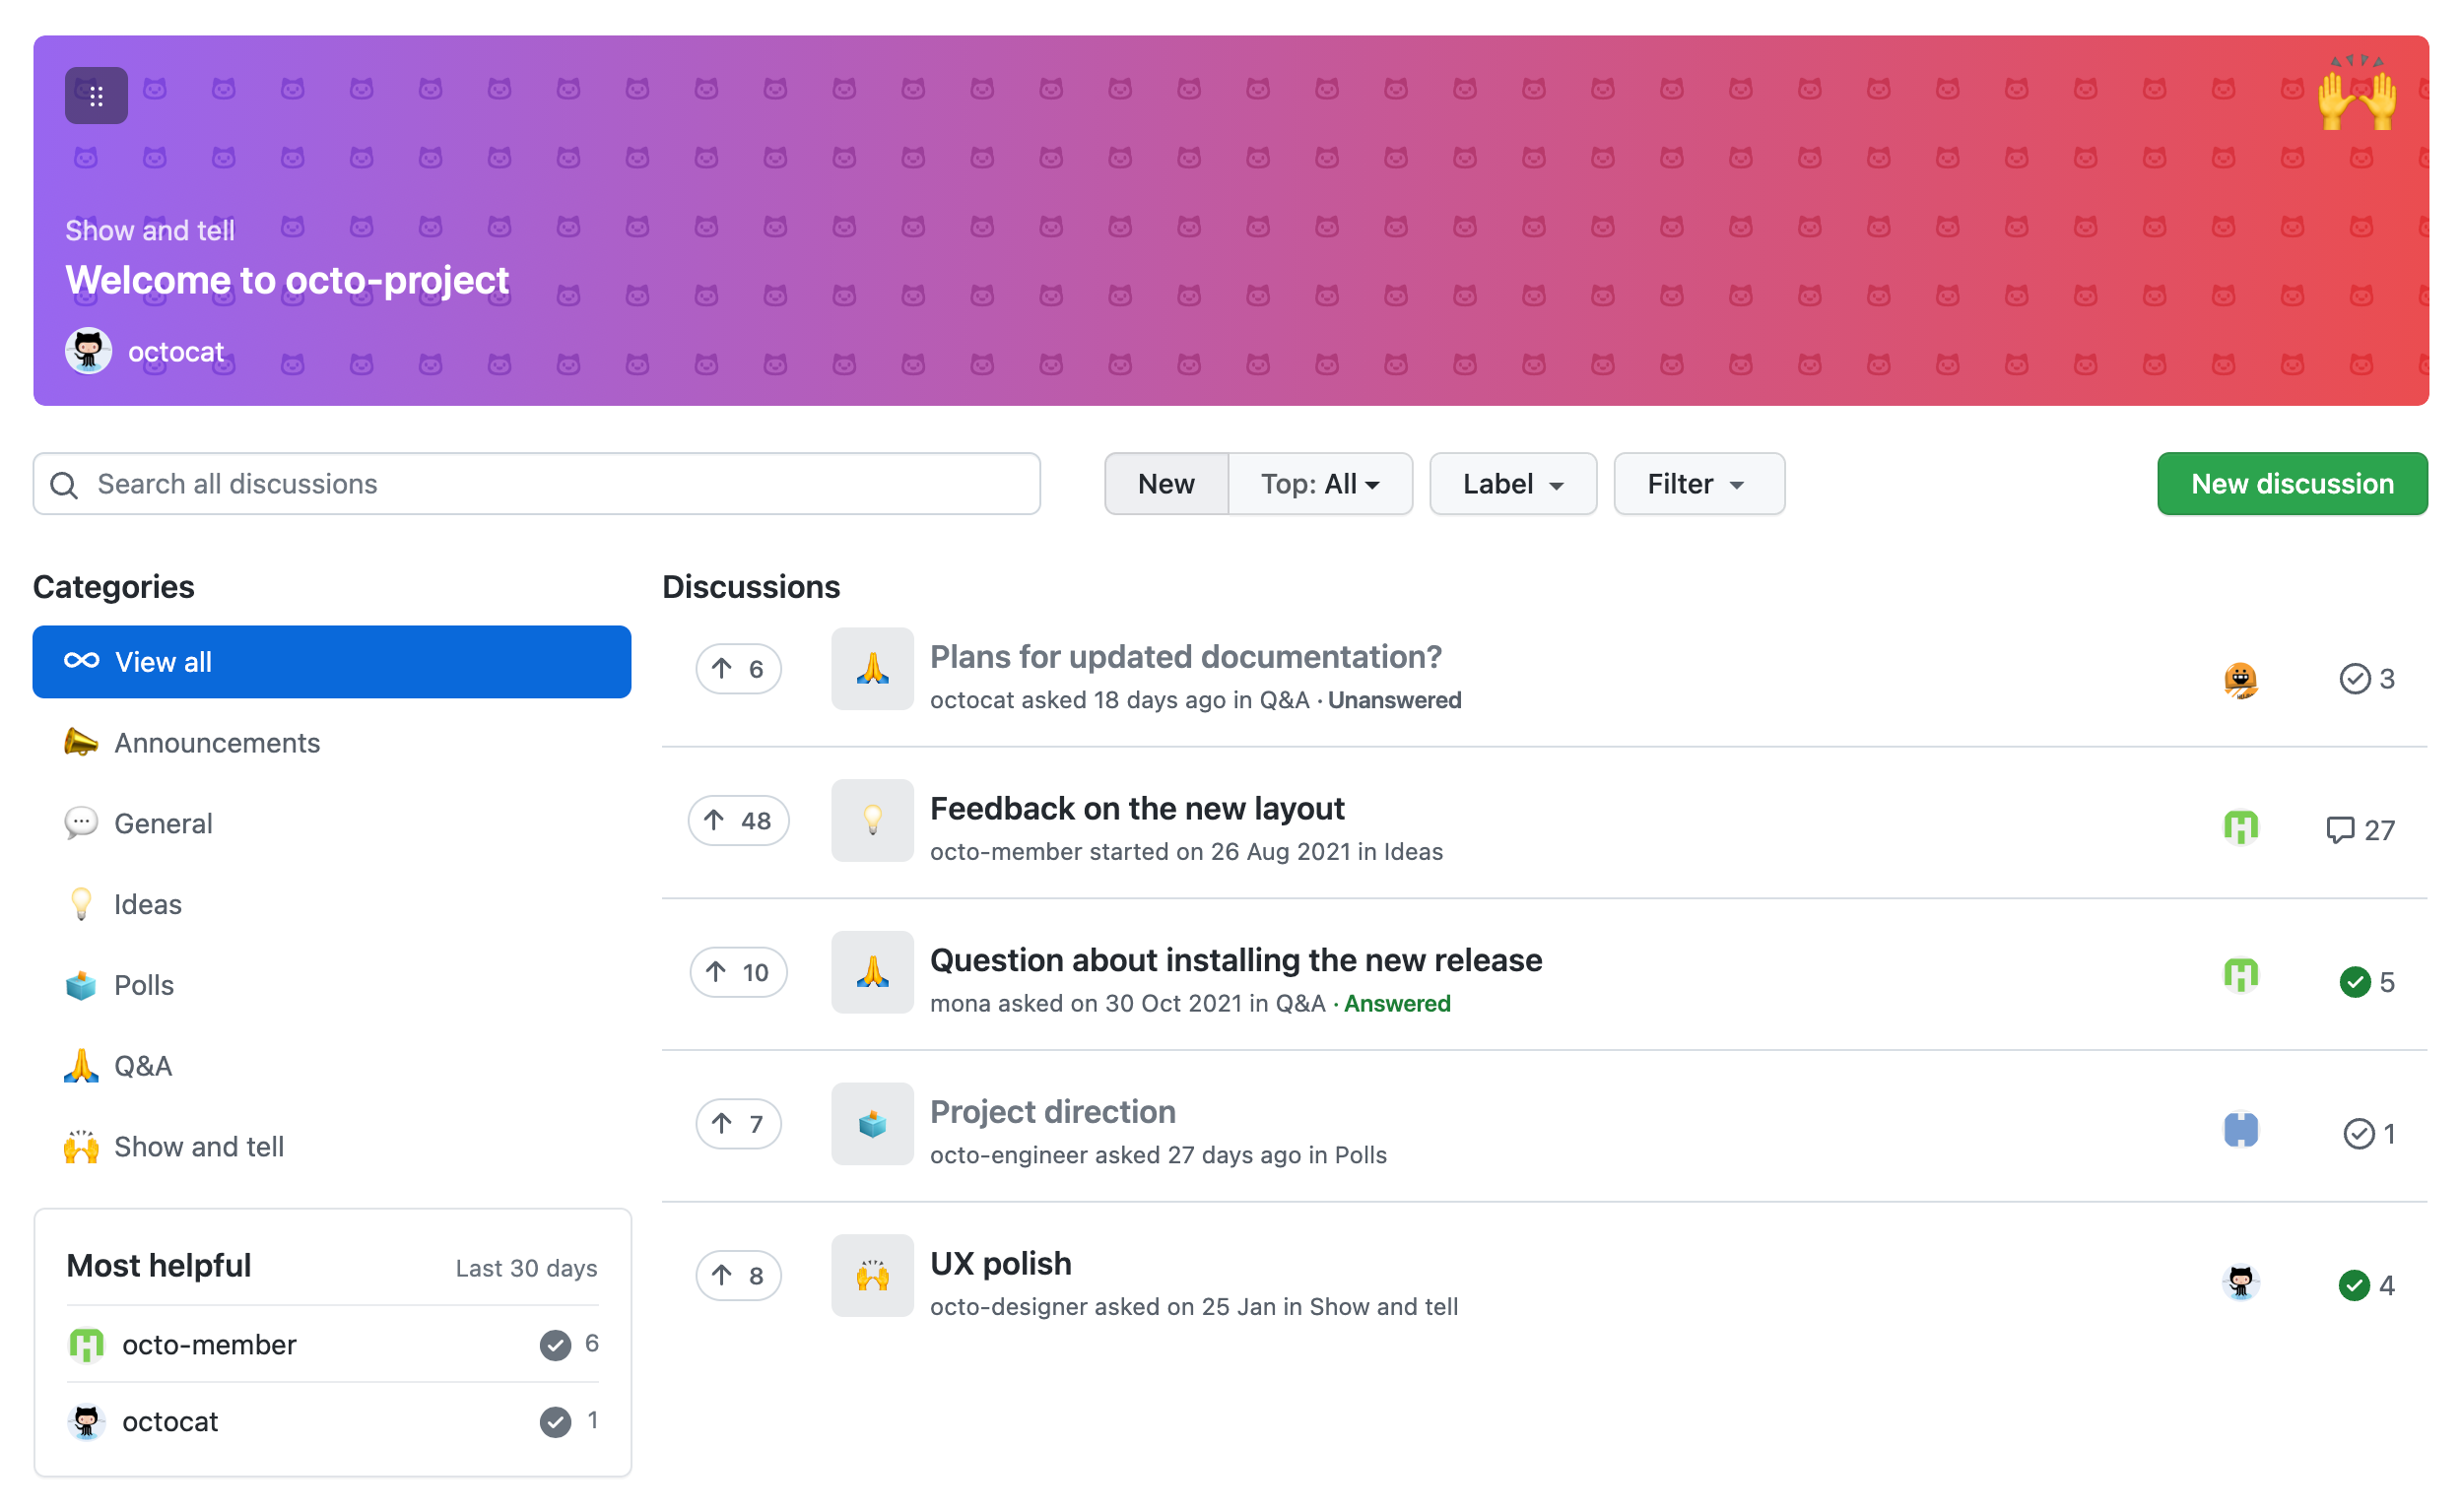 Снимок экрана: страница "Обсуждения" для репозитория GitHub с списком обсуждений, таких как "Отзывы о новом макете" и "Направление проекта".